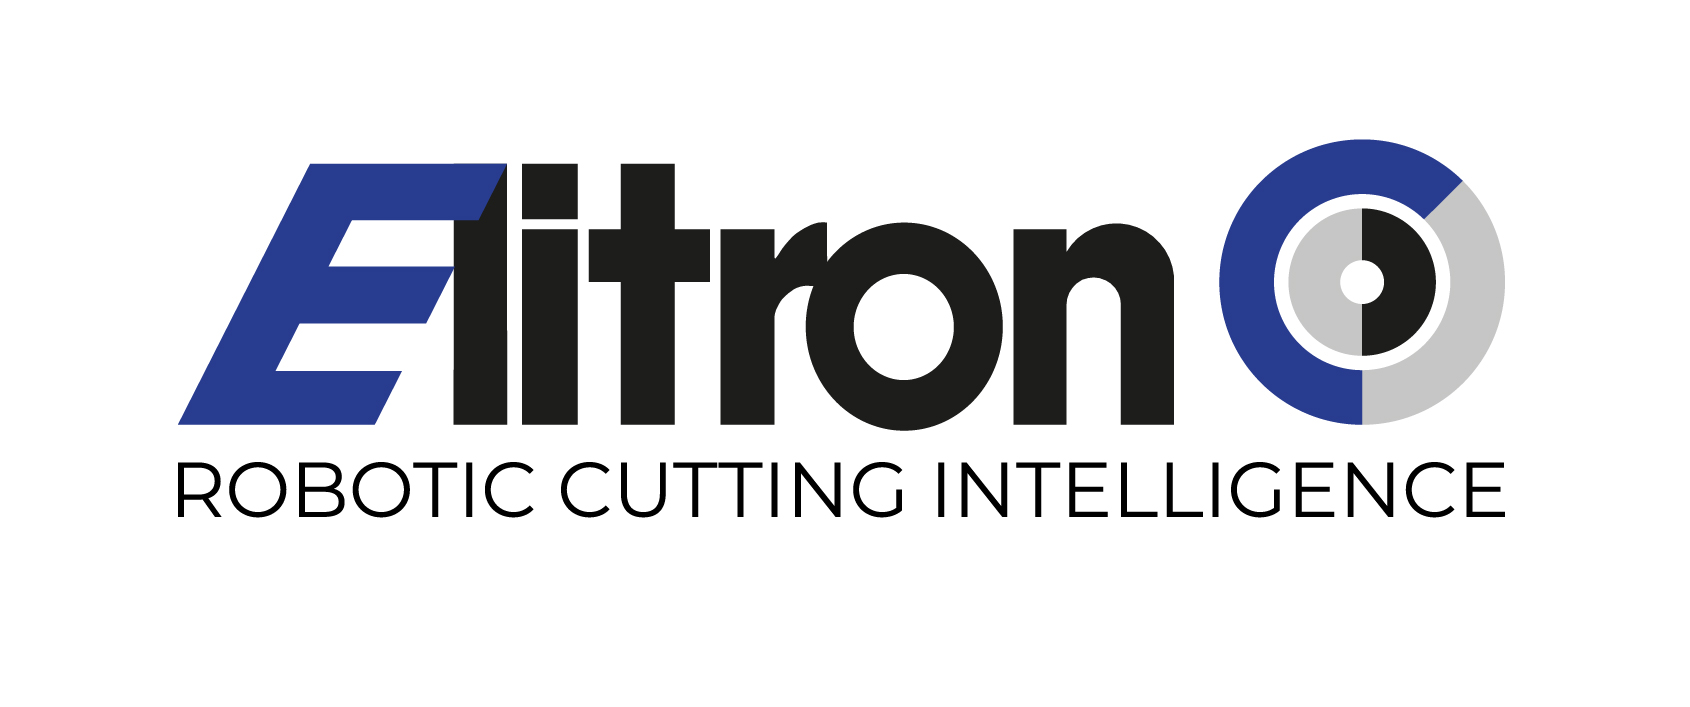 Elitron America Inc.